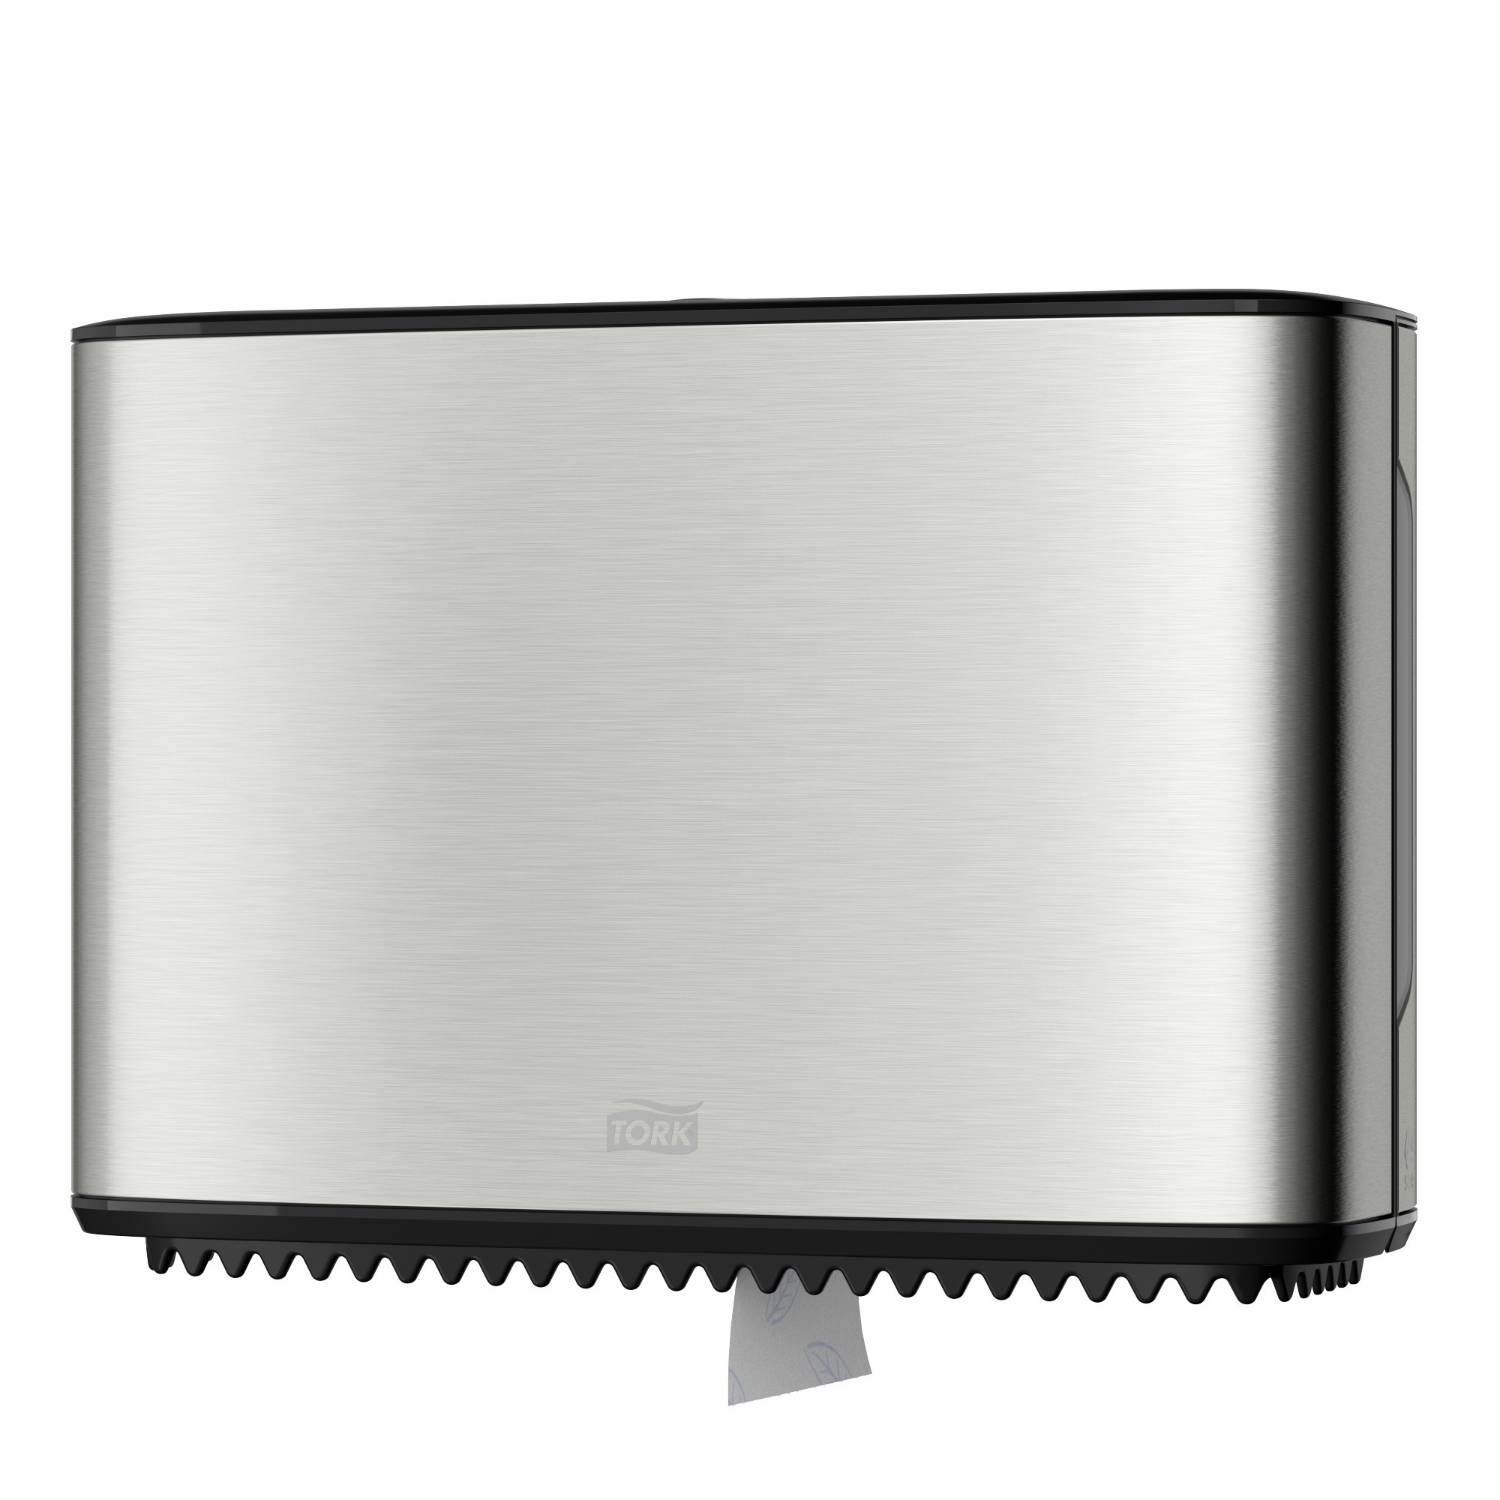 Tork Mini Jumbo Toilet Roll Dispenser in Image Design -Stainless Steel